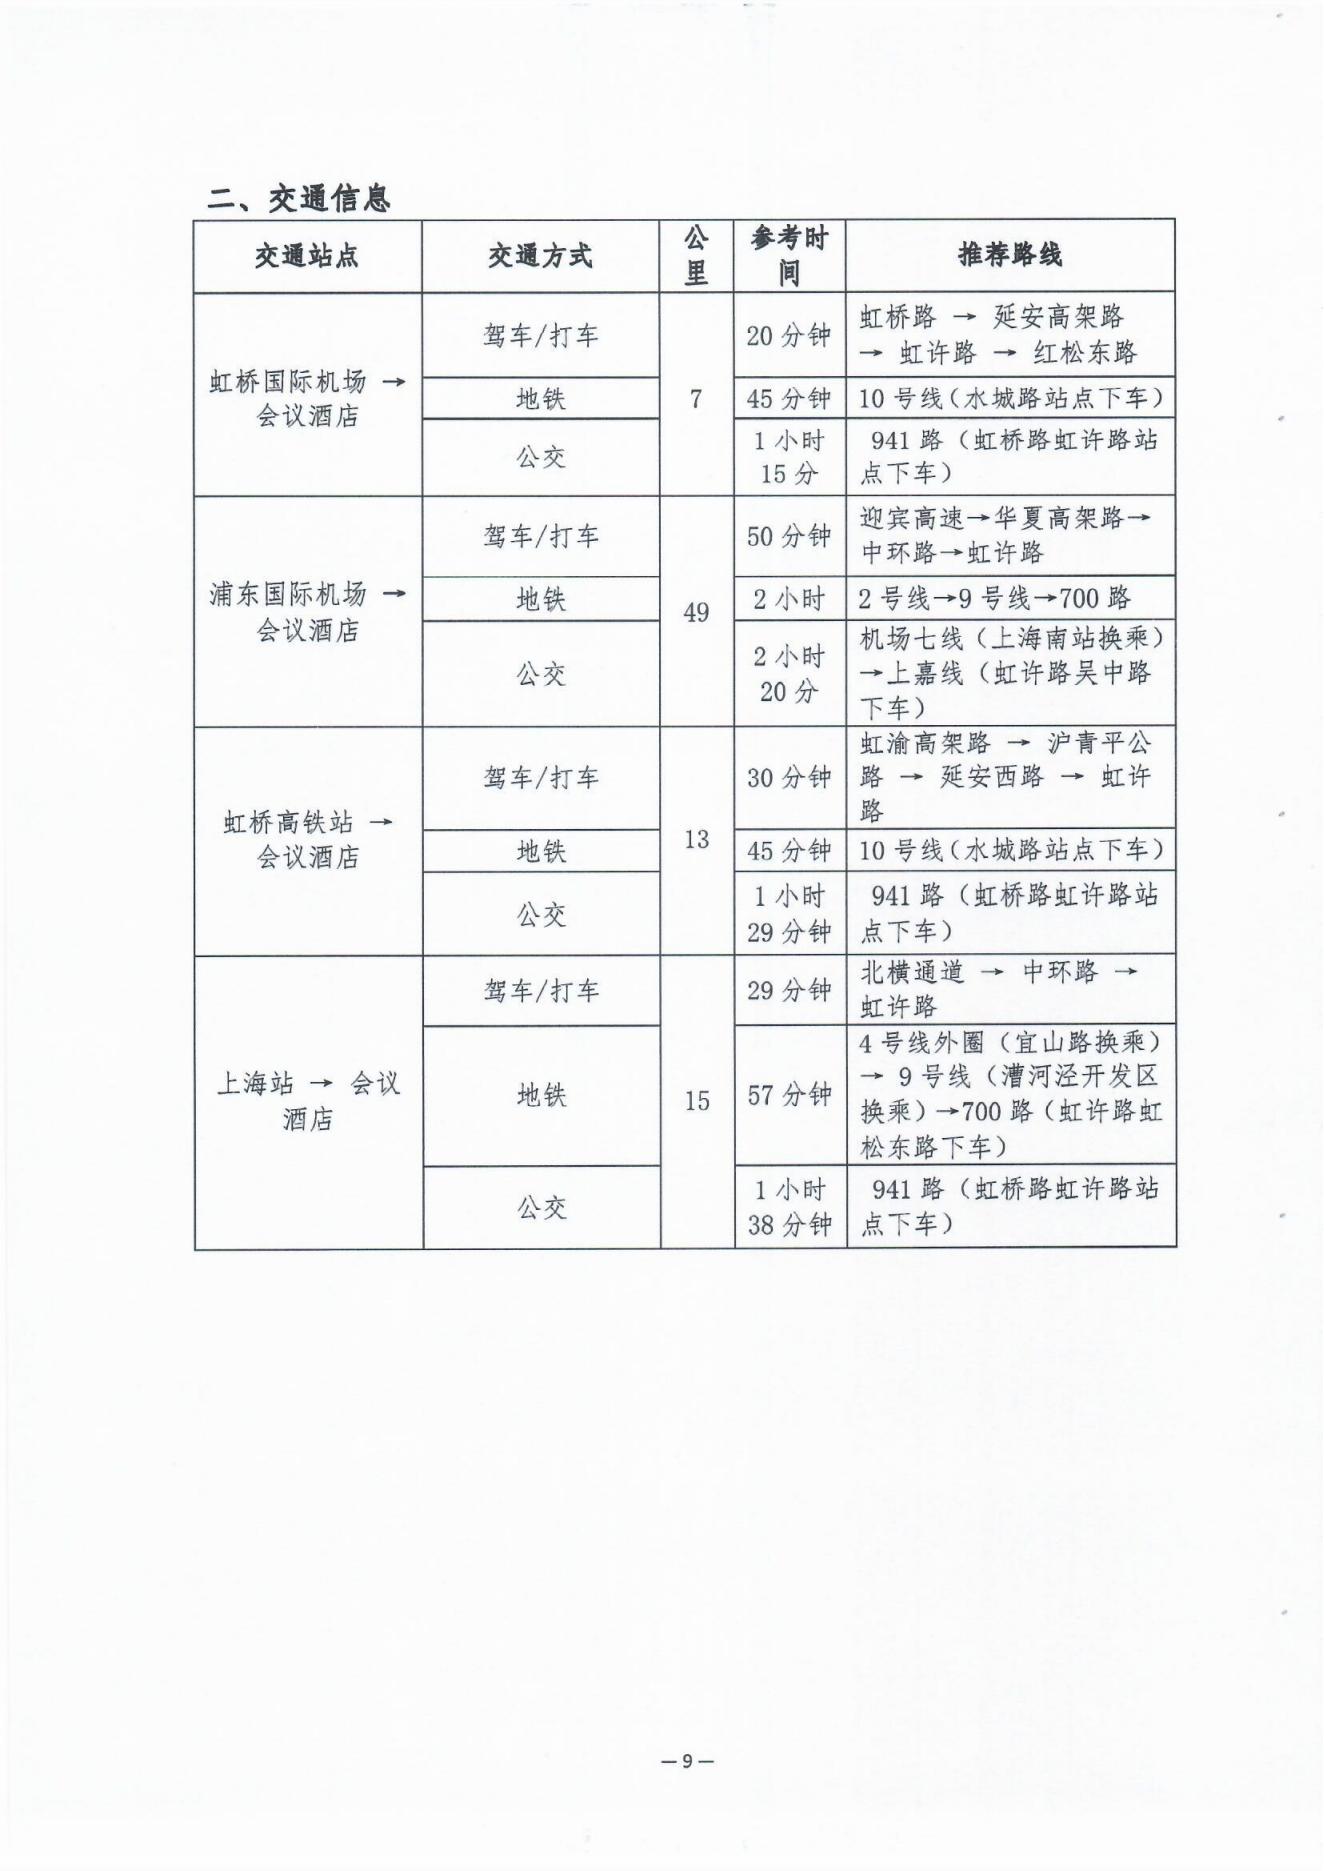 2023中国老年慢病大会会议通知（第二轮）0606(1)_08.jpg